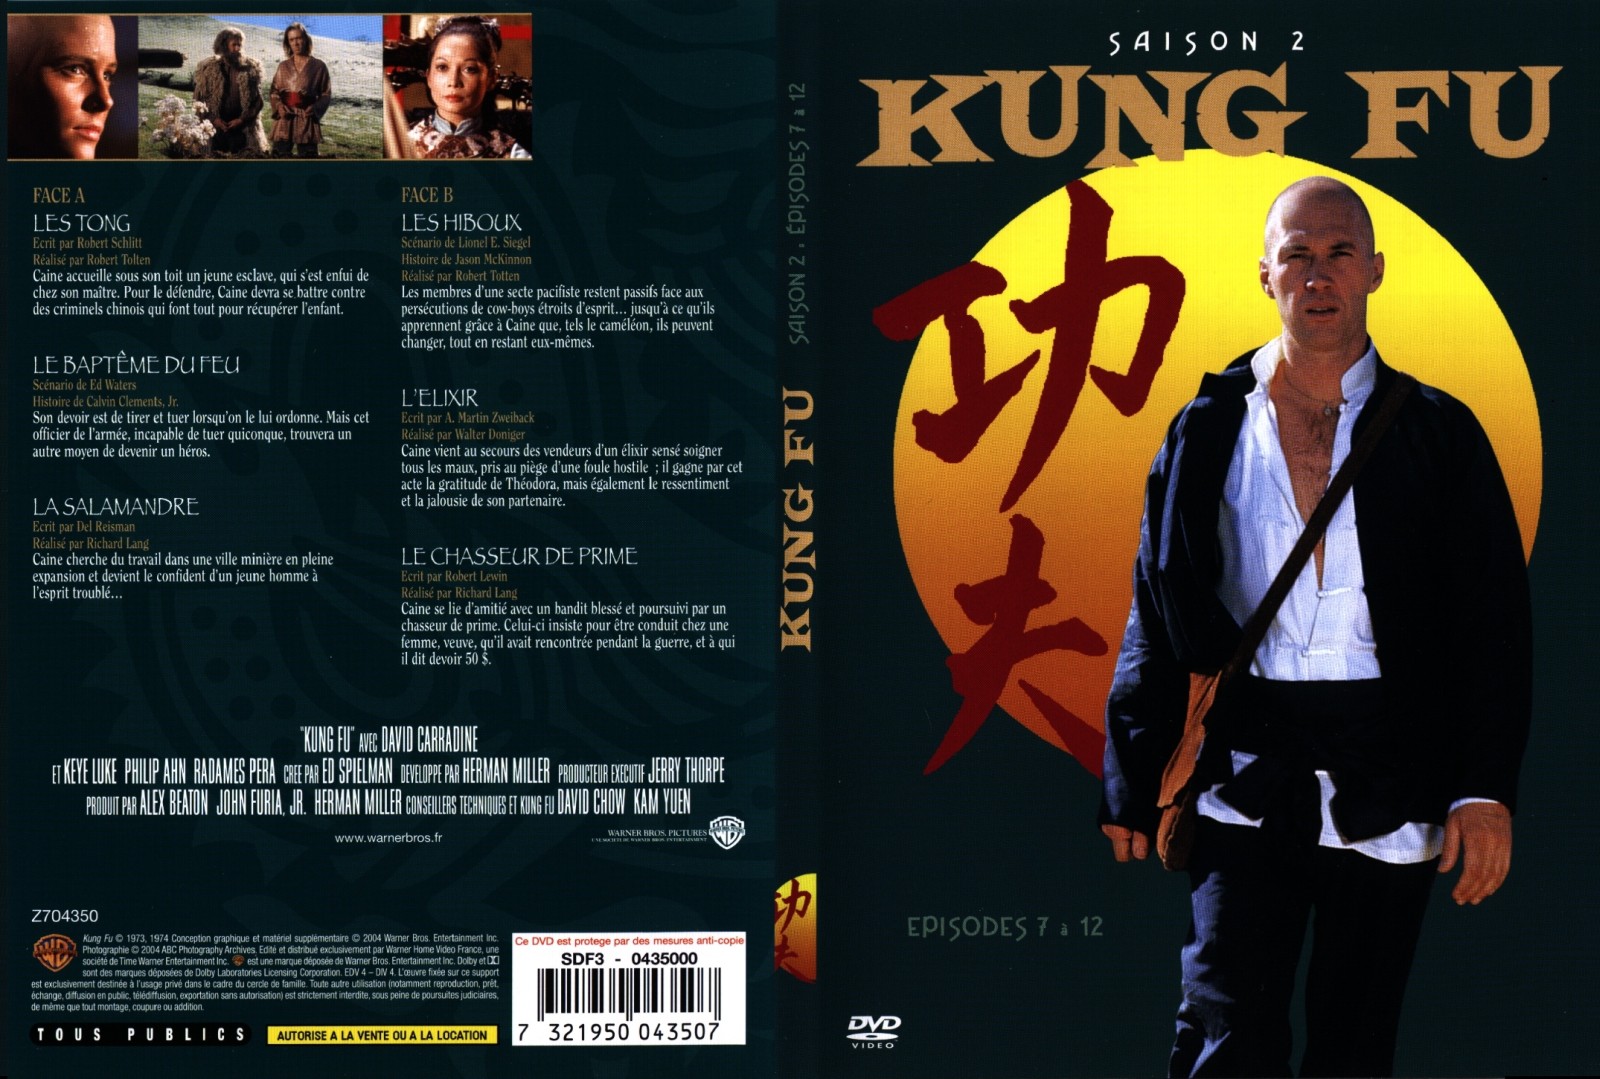 Jaquette DVD Kung fu saison 2 vol 2 - SLIM